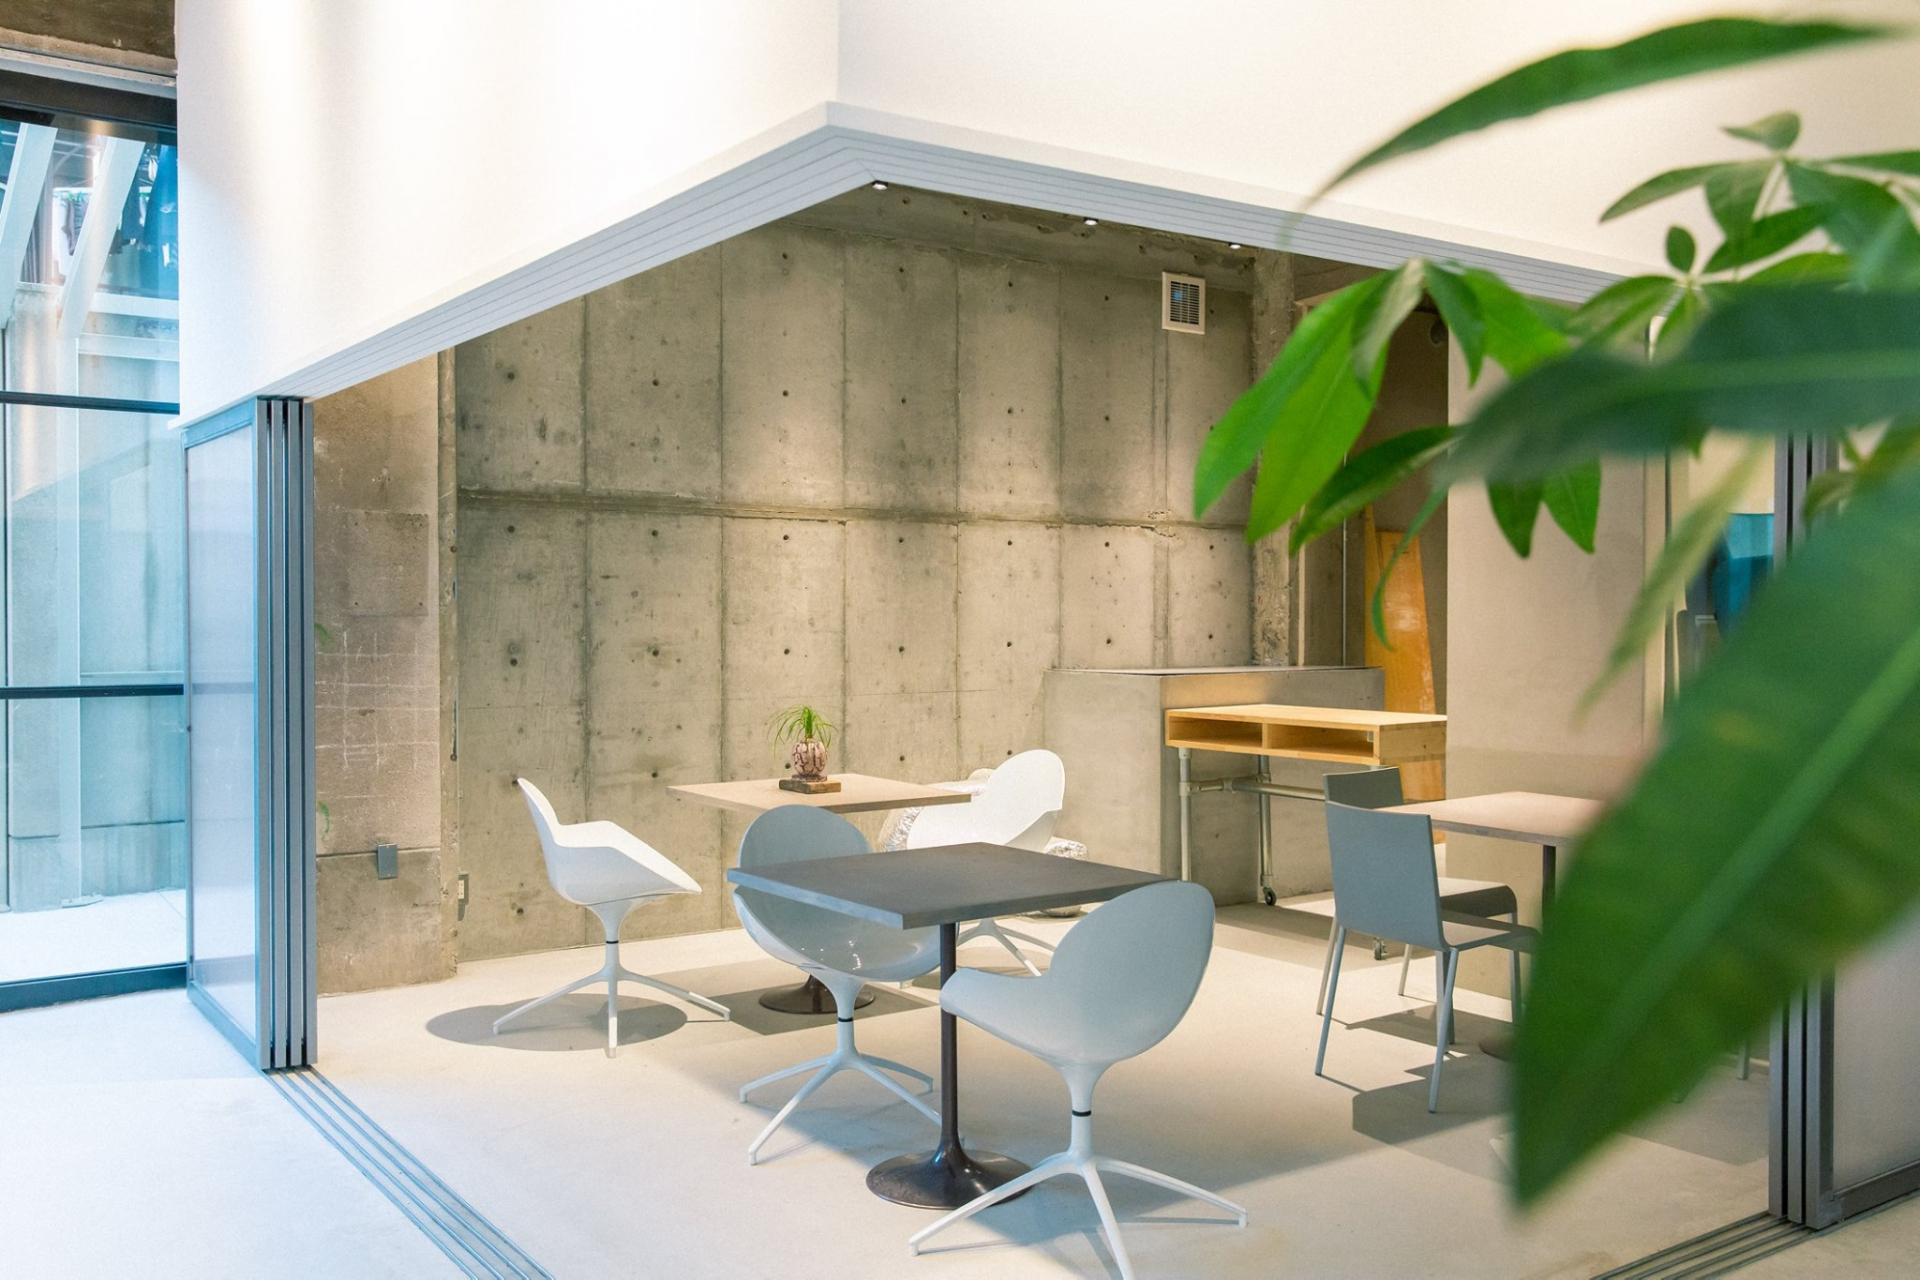  彷如藝術家版的雙層公寓！京都Kagan Hotel以極簡工業風打造共享酒店新模式